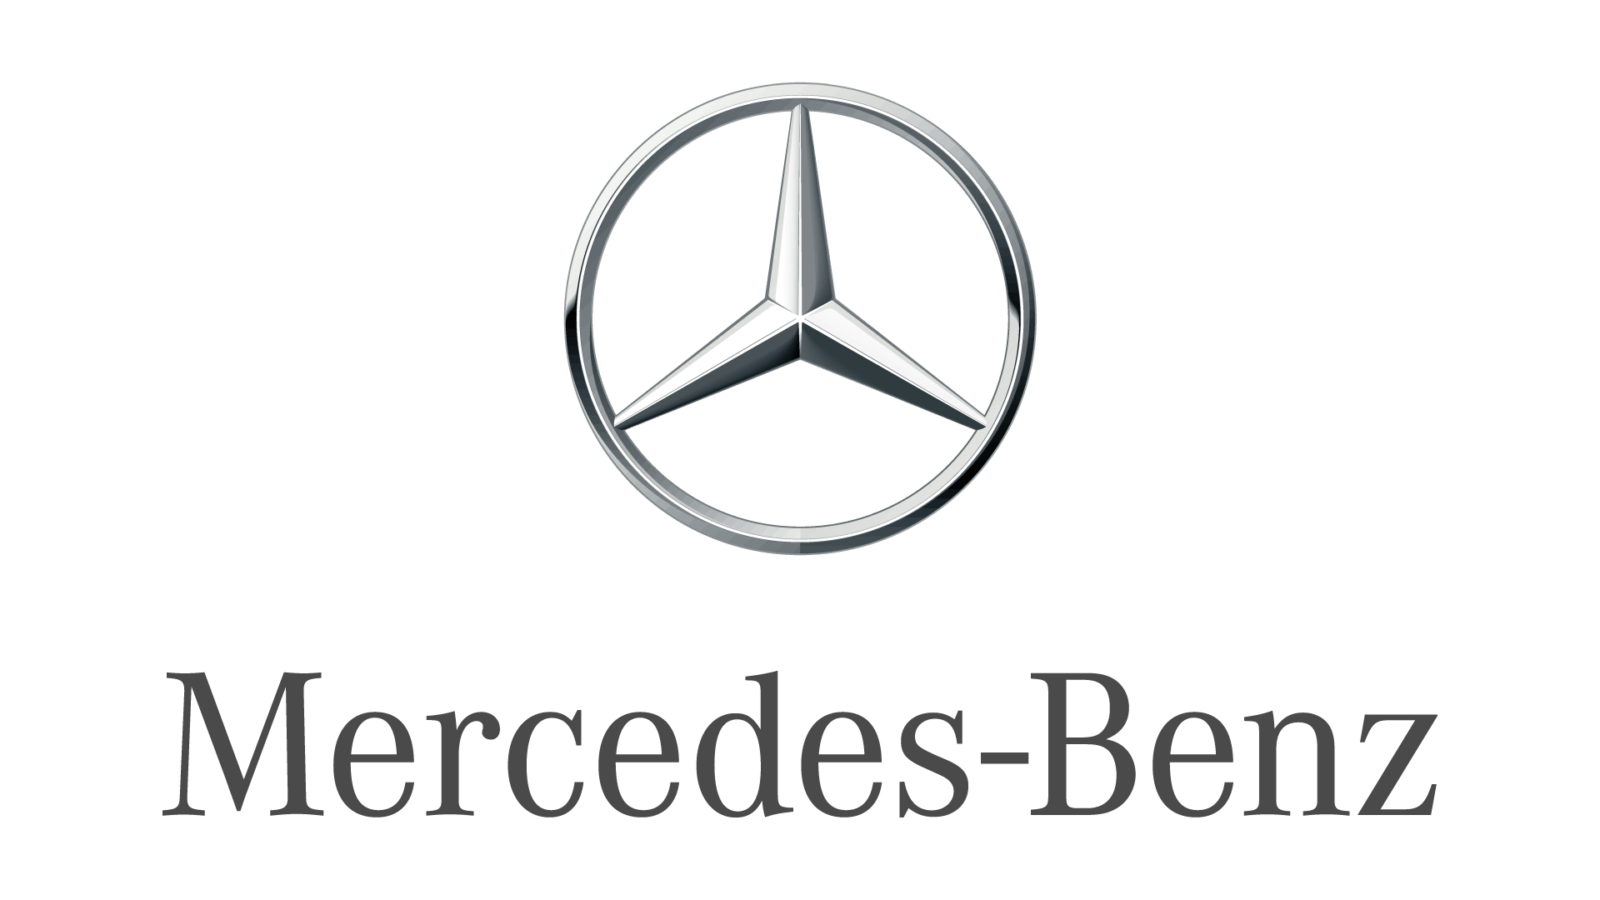 Официальному дилеру Mercedes-Benz в Чувашской республике требуется Ученик диагноста